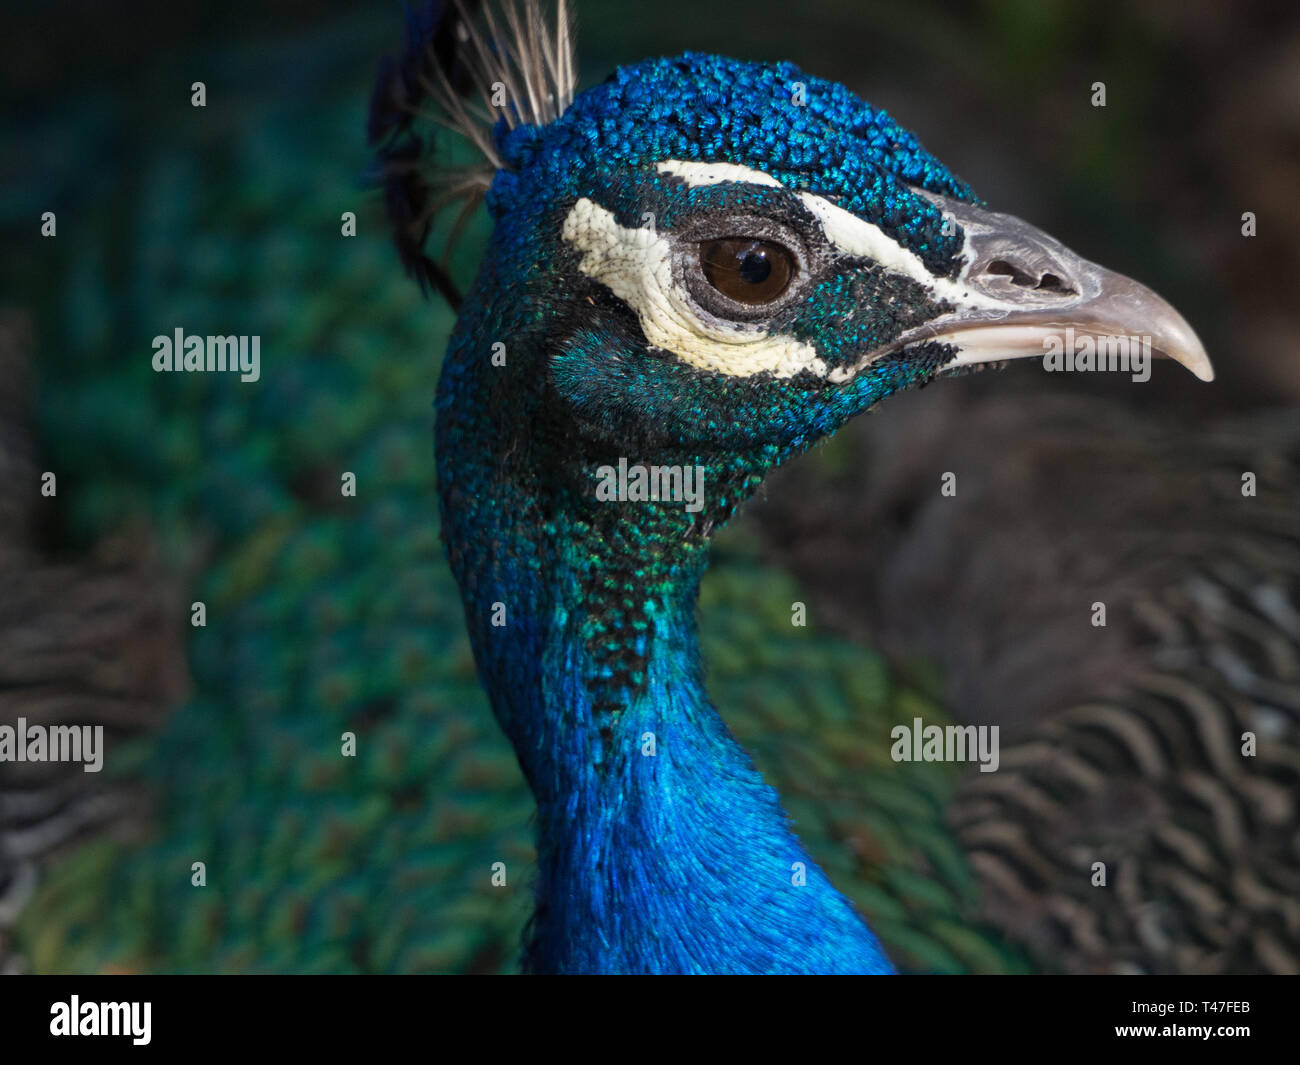 Closeup of a peacock's face Stock Photo